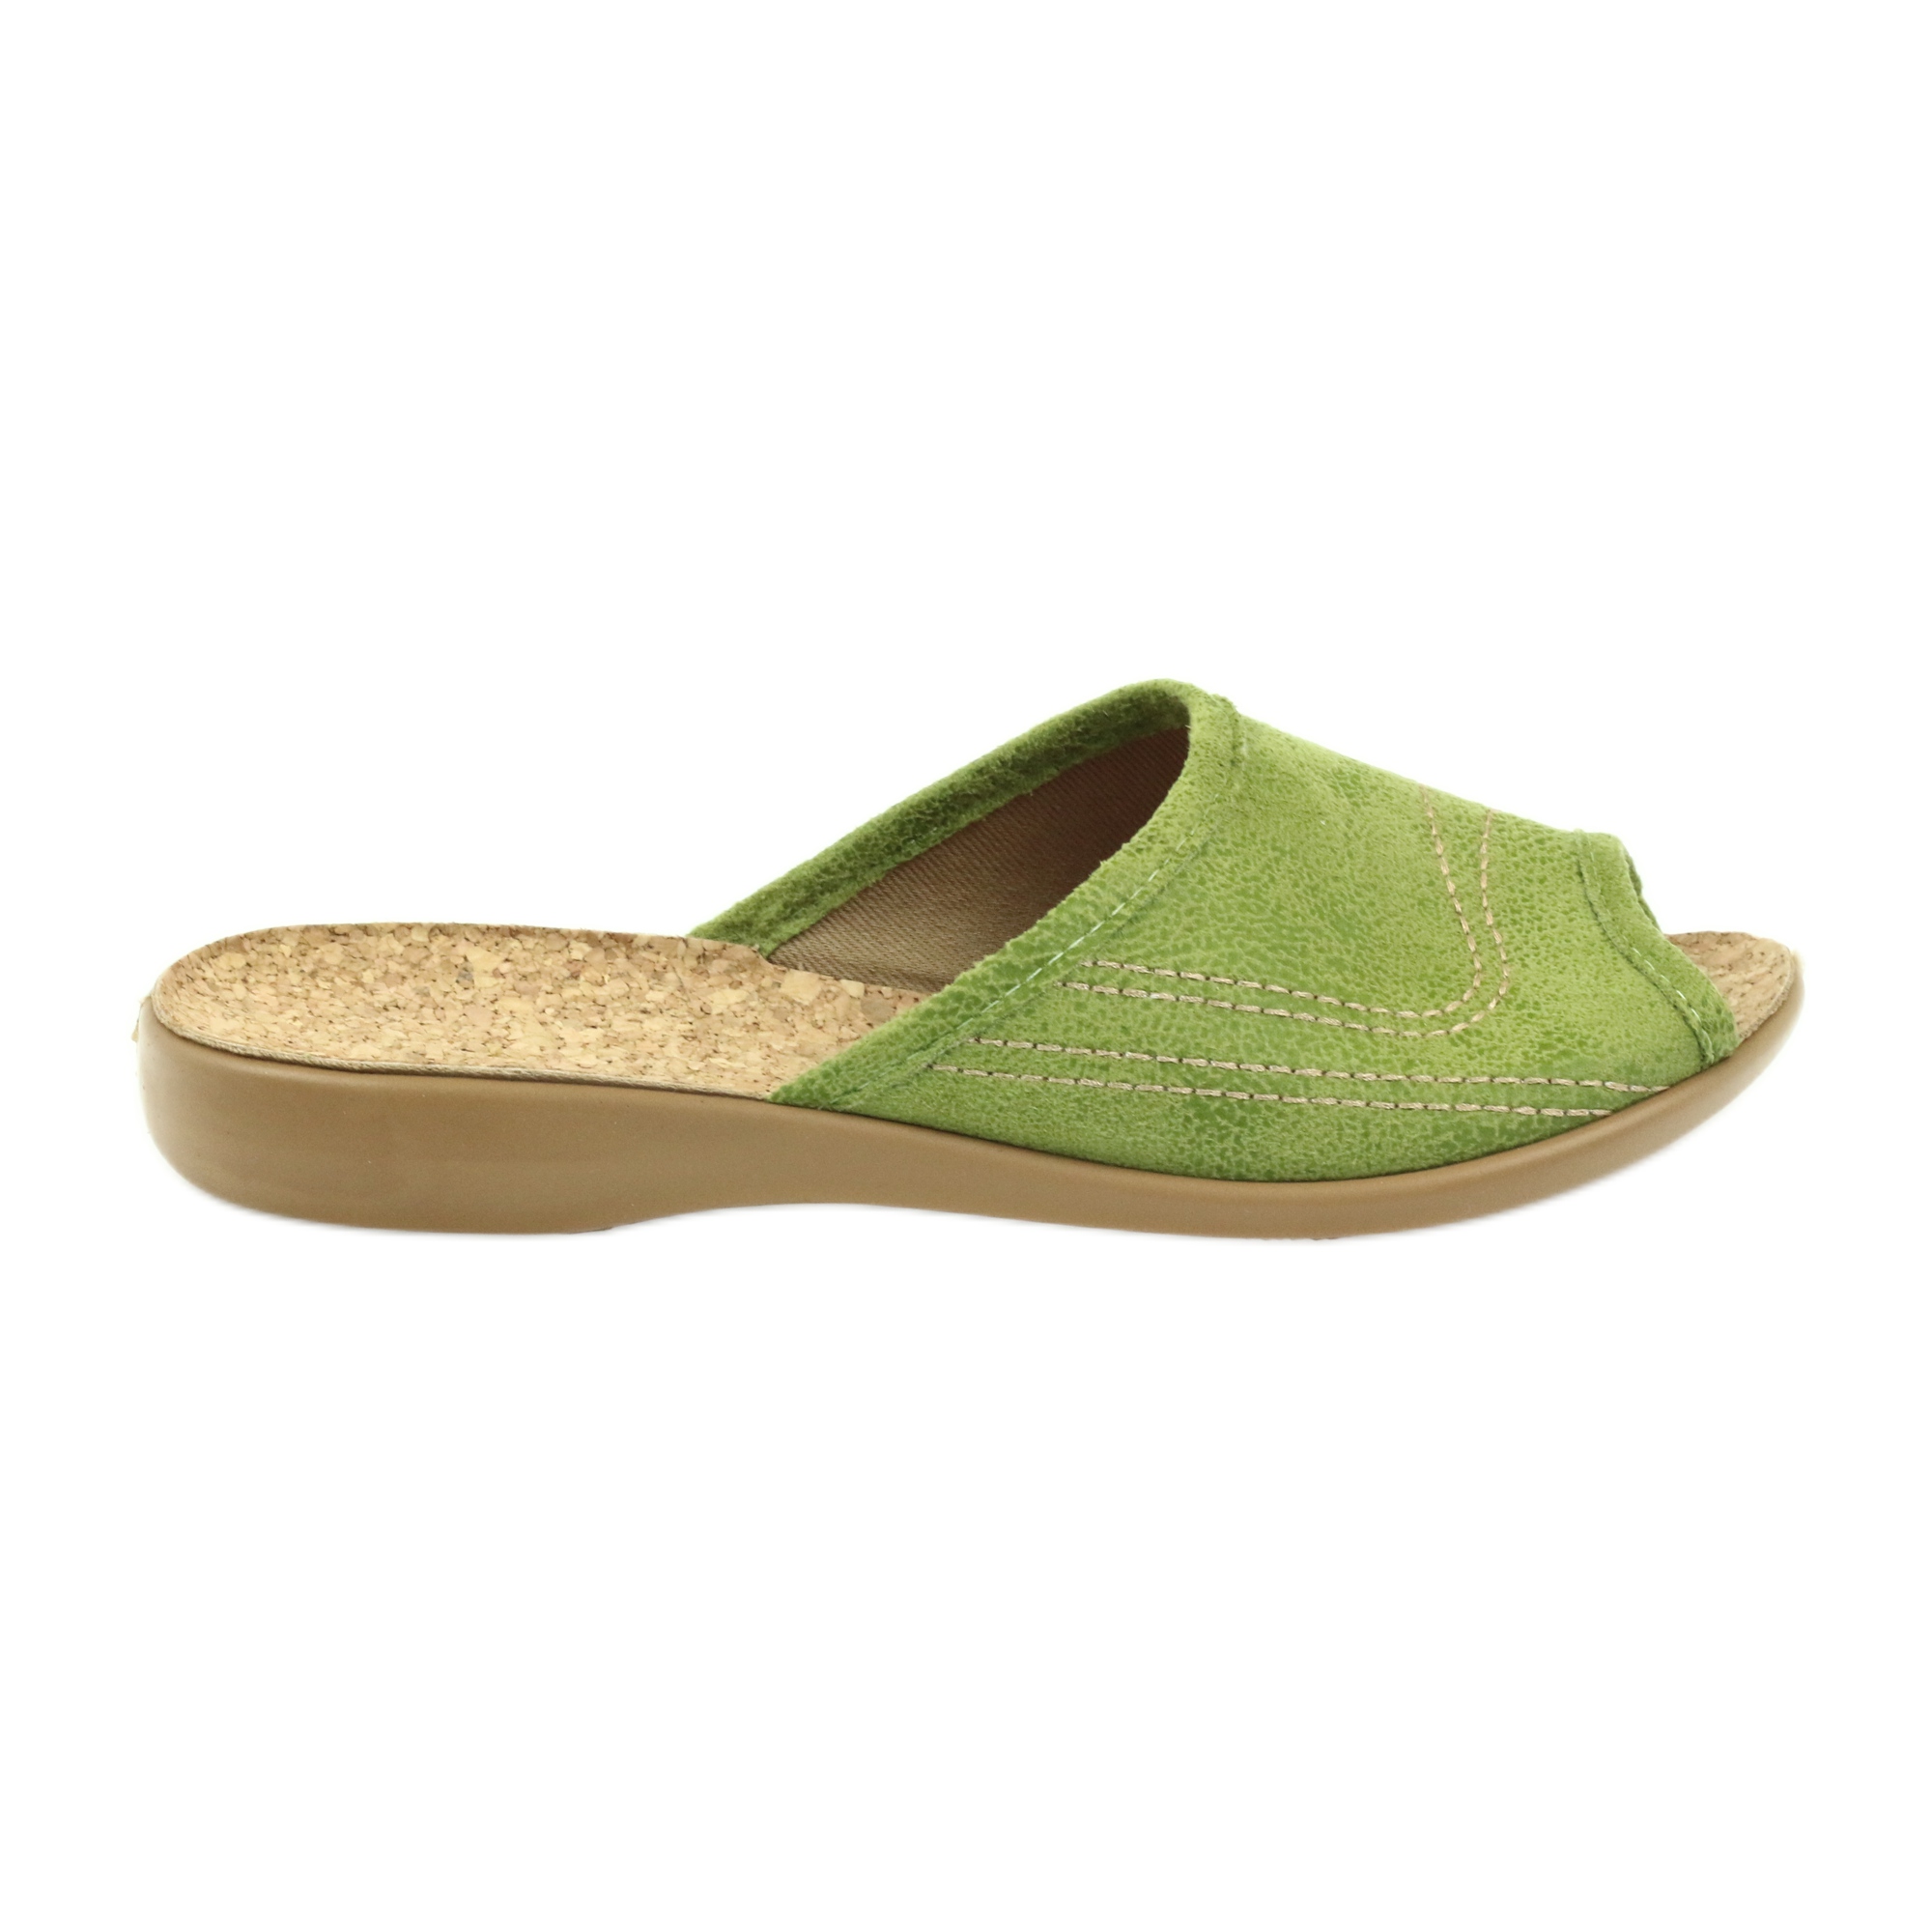 Befado buty damskie kapcie klapki 254D021 zielone